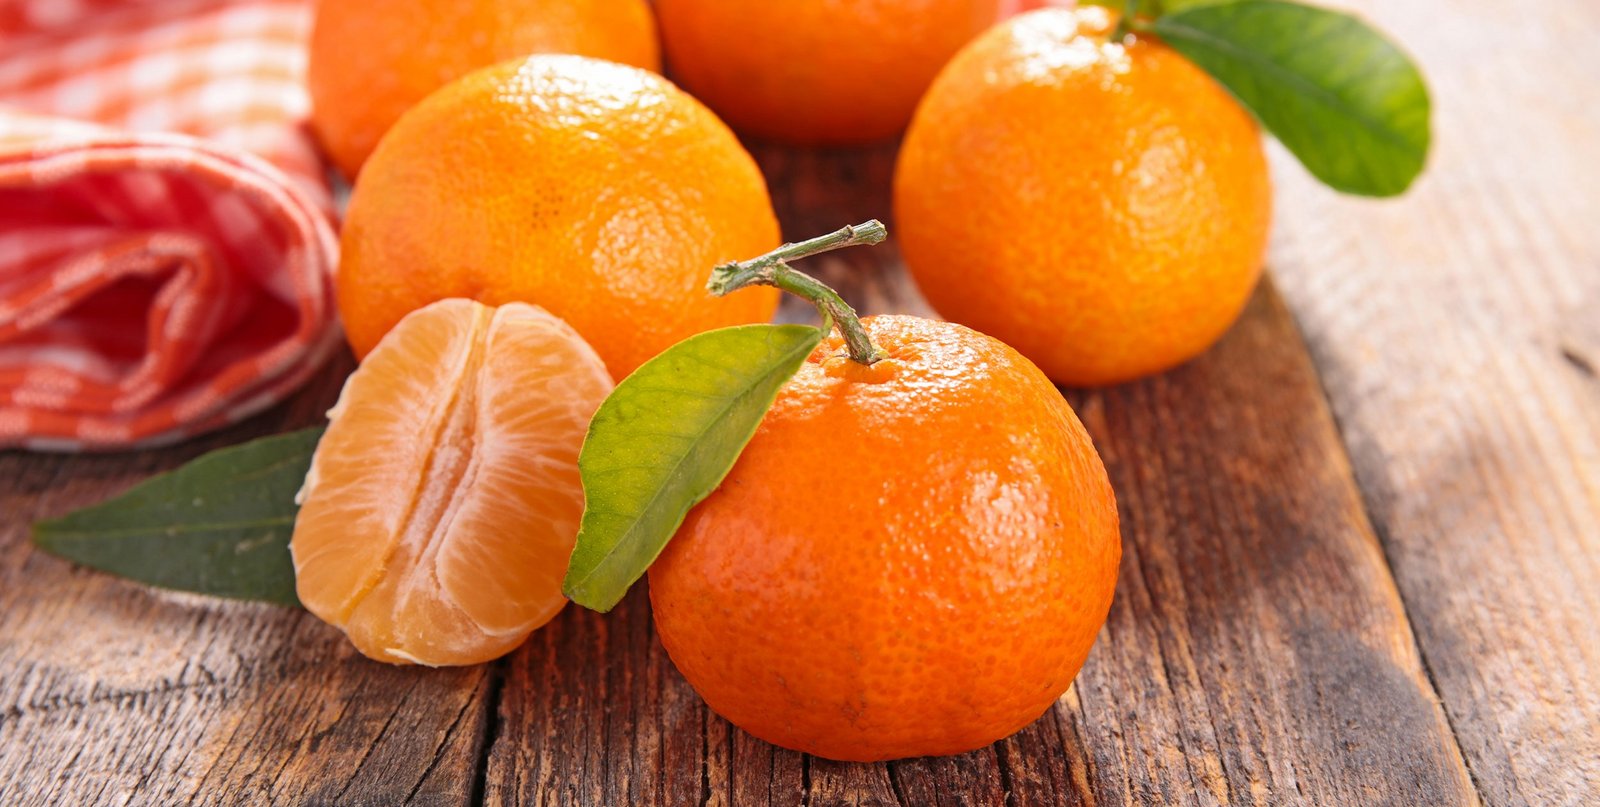 Mandarine oder Clementine: die Unterschiede - EMSA